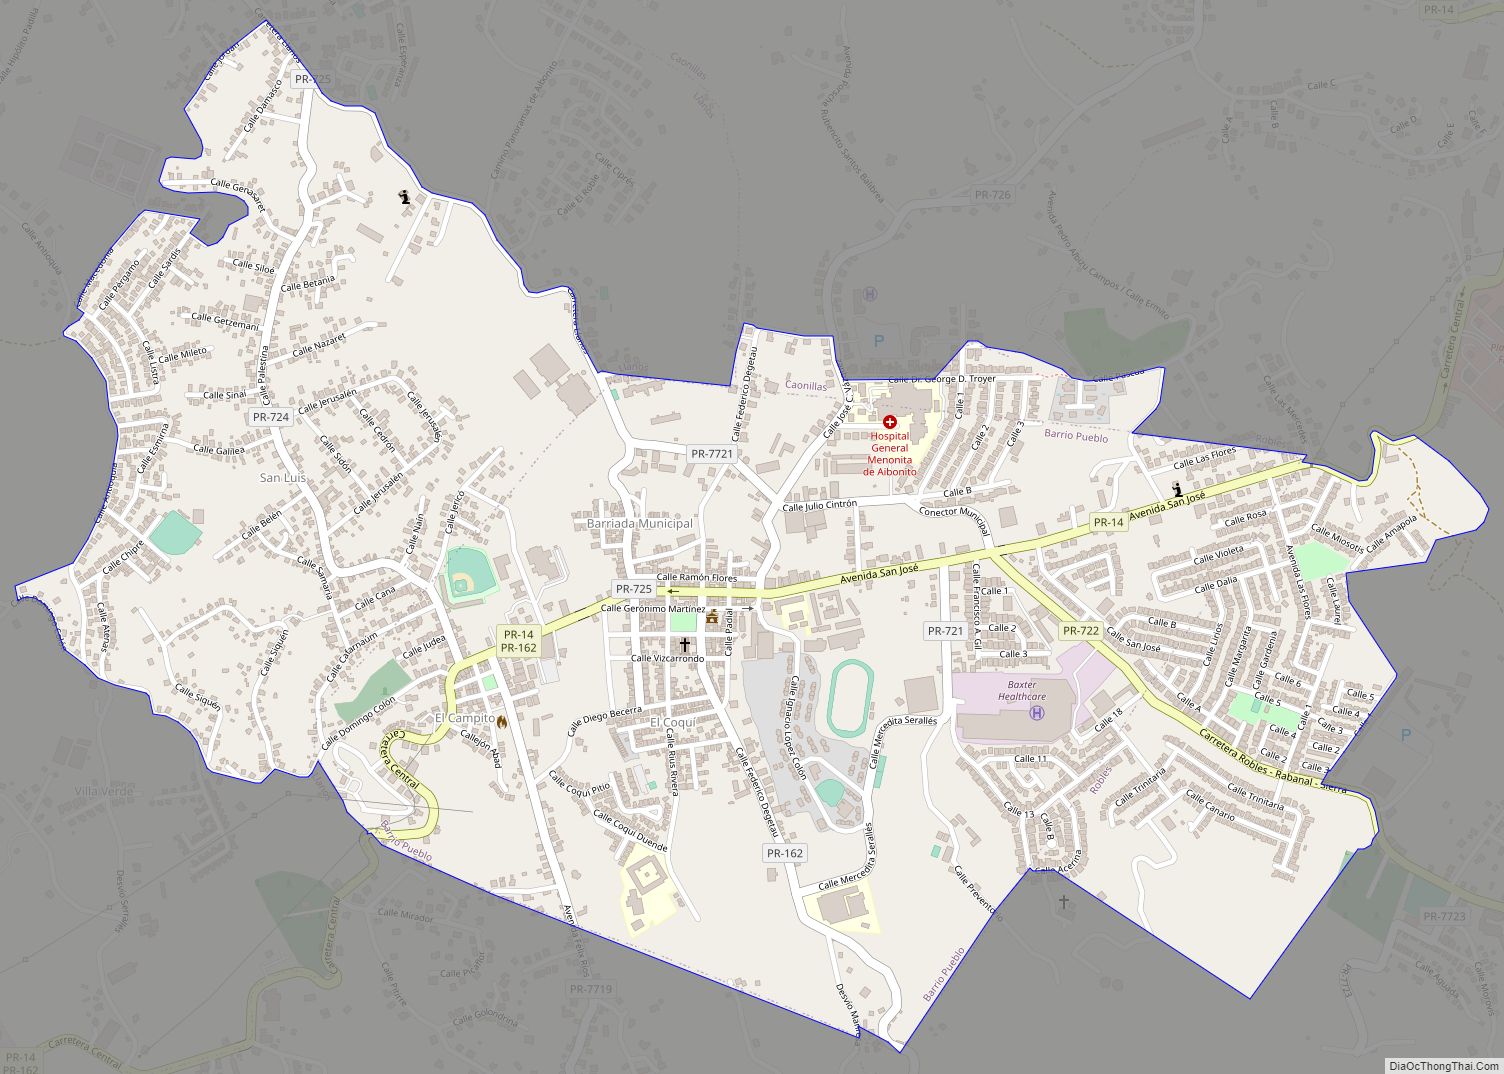 Map of Aibonito zona urbana